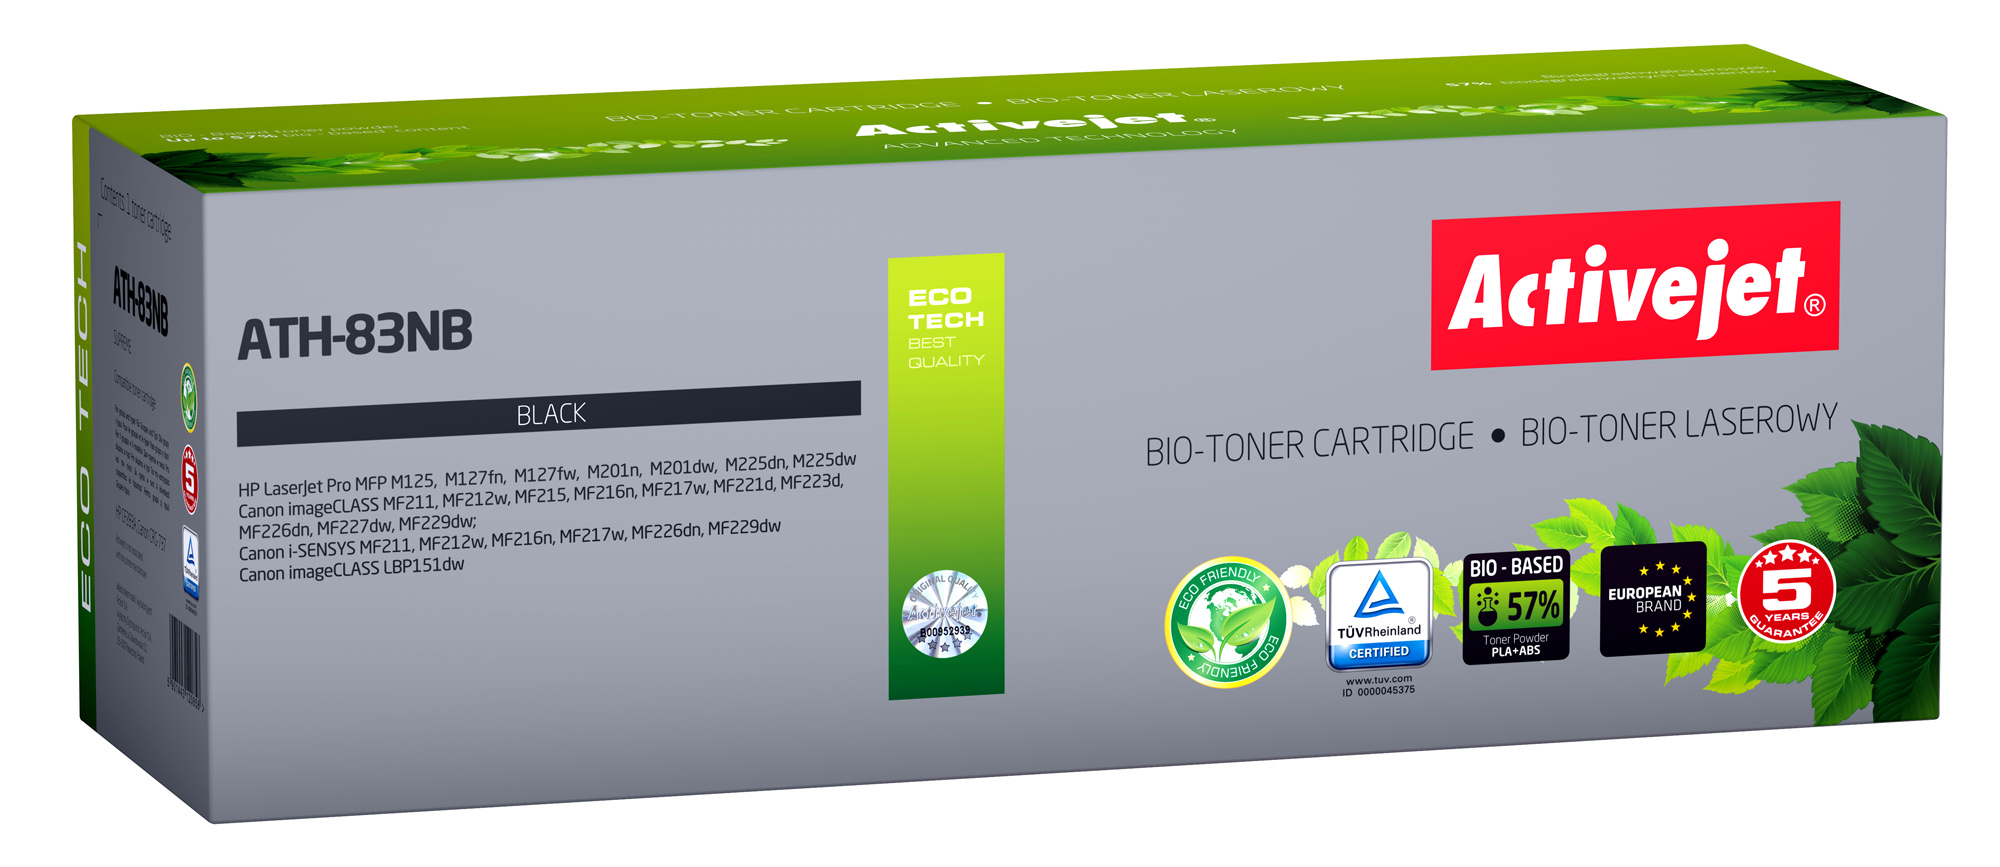 BIO Toner Activejet ATH-83NB do drukarek HP, Canon, Zamiennik HP 83A CF283A, Canon CRG-737;  Supreme;  1500 stron;  czarny. ECO Toner.